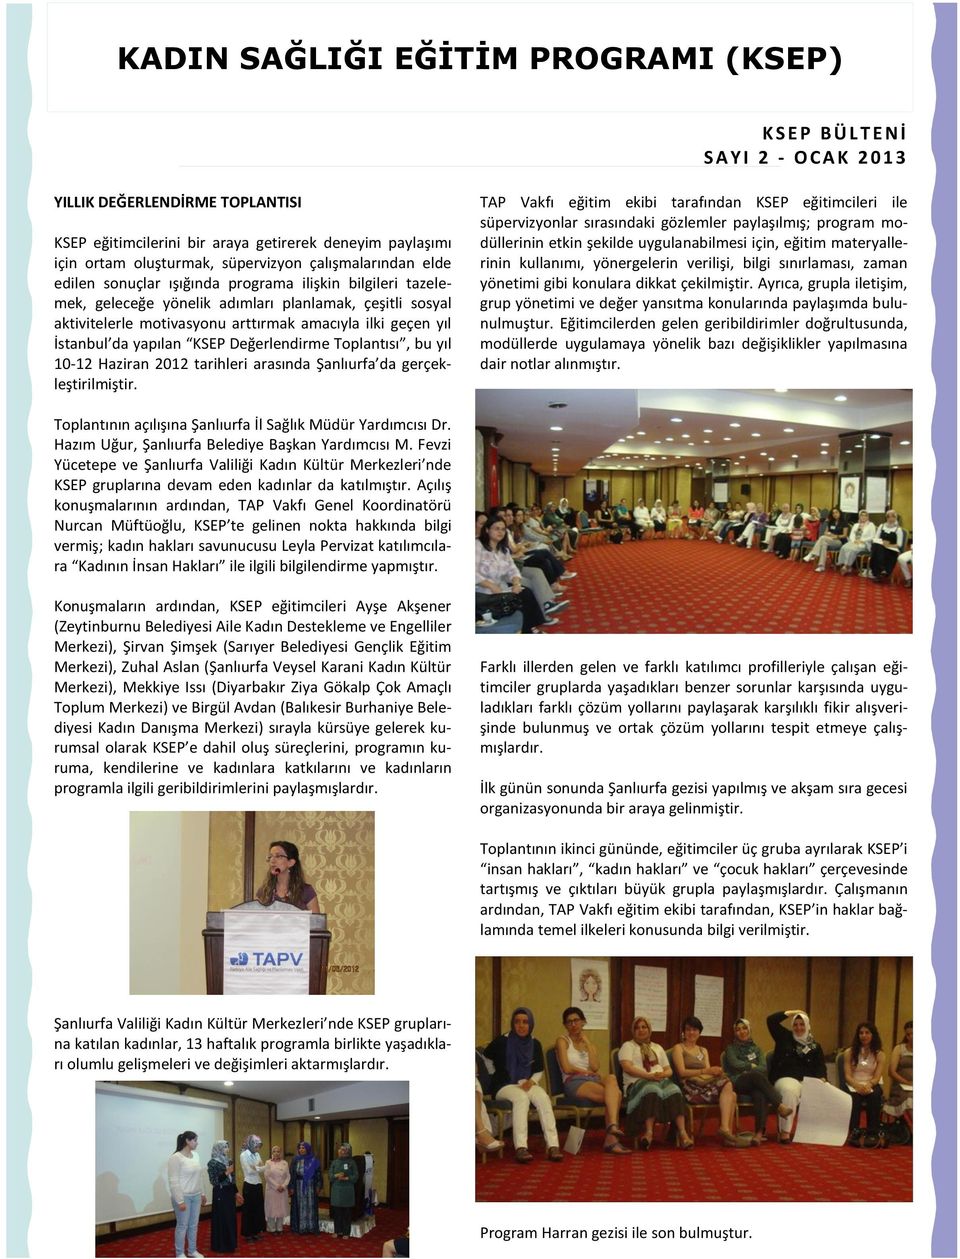 geçen yıl İstanbul da yapılan KSEP Değerlendirme Toplantısı, bu yıl 10-12 Haziran 2012 tarihleri arasında Şanlıurfa da gerçekleştirilmiştir.